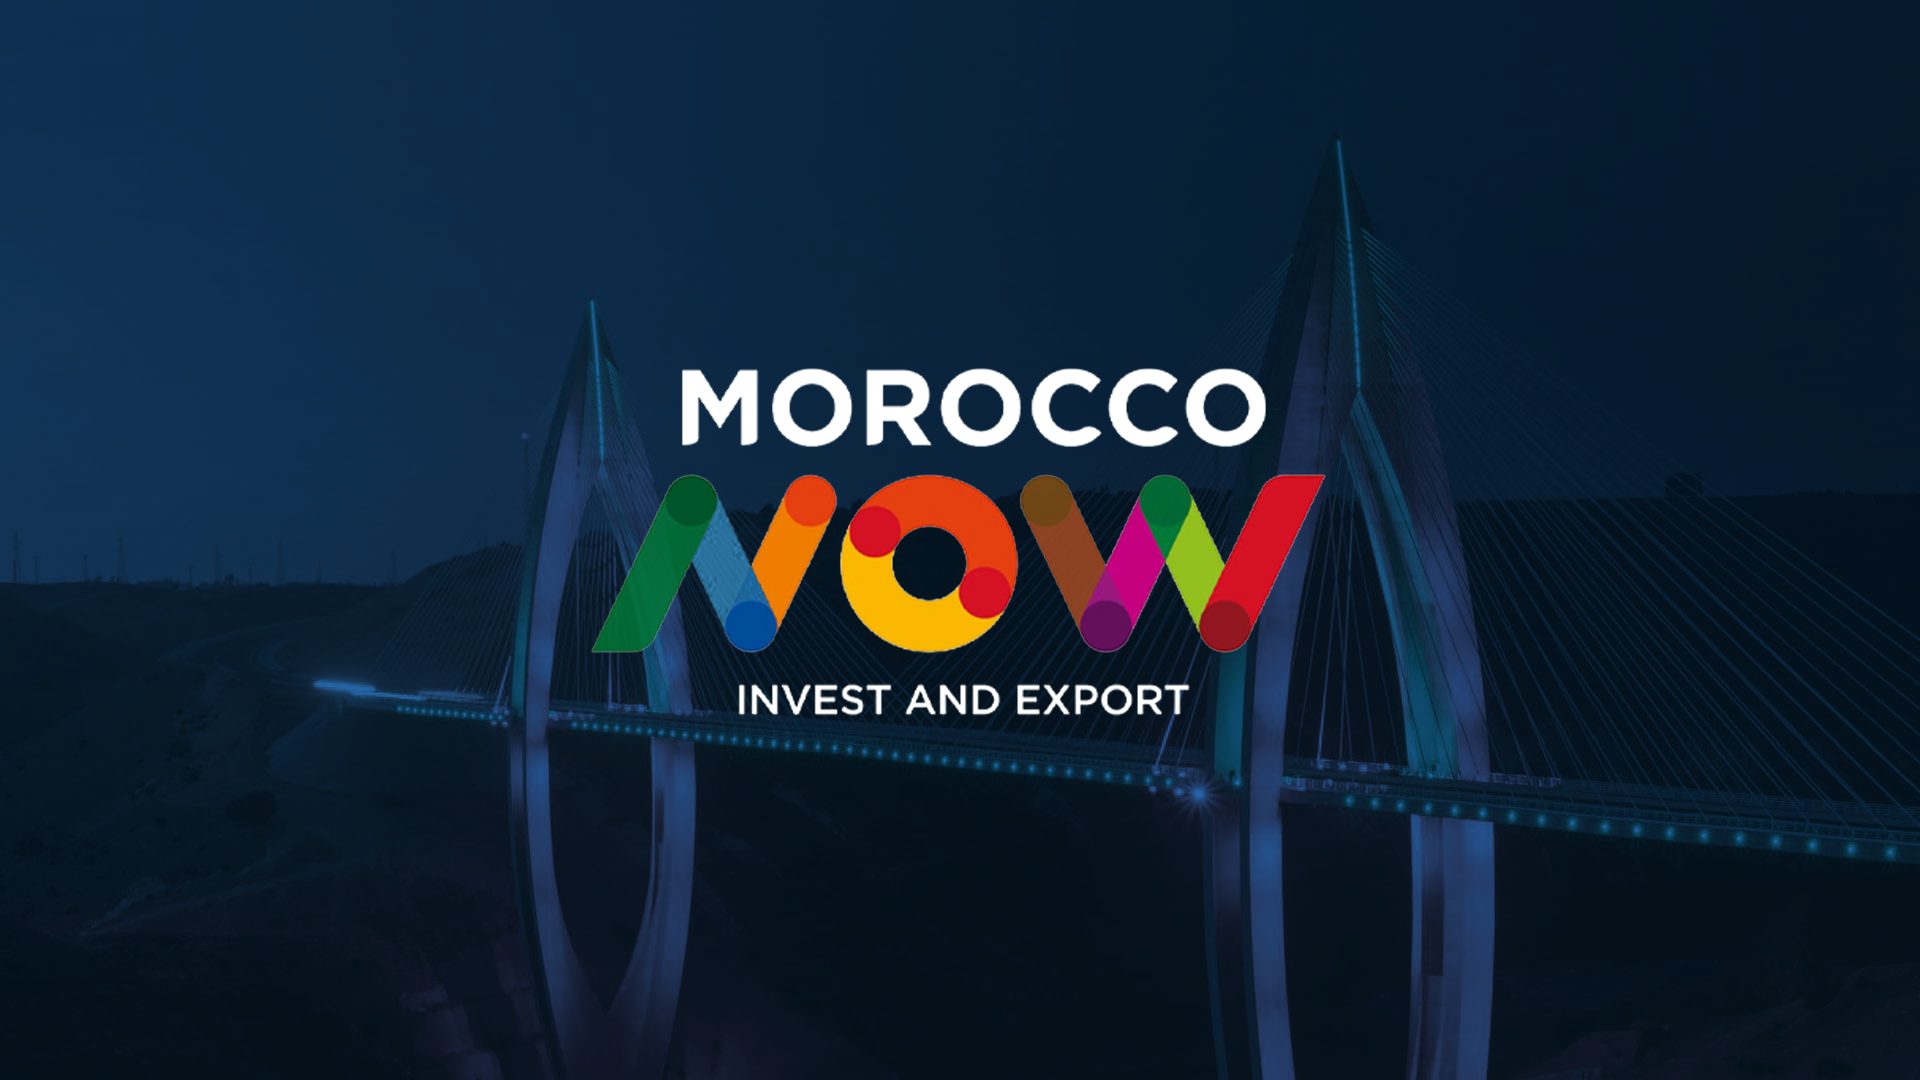 Morocco Now : Nouvelles perspectives pour l’export marocain [INTÉGRAL]